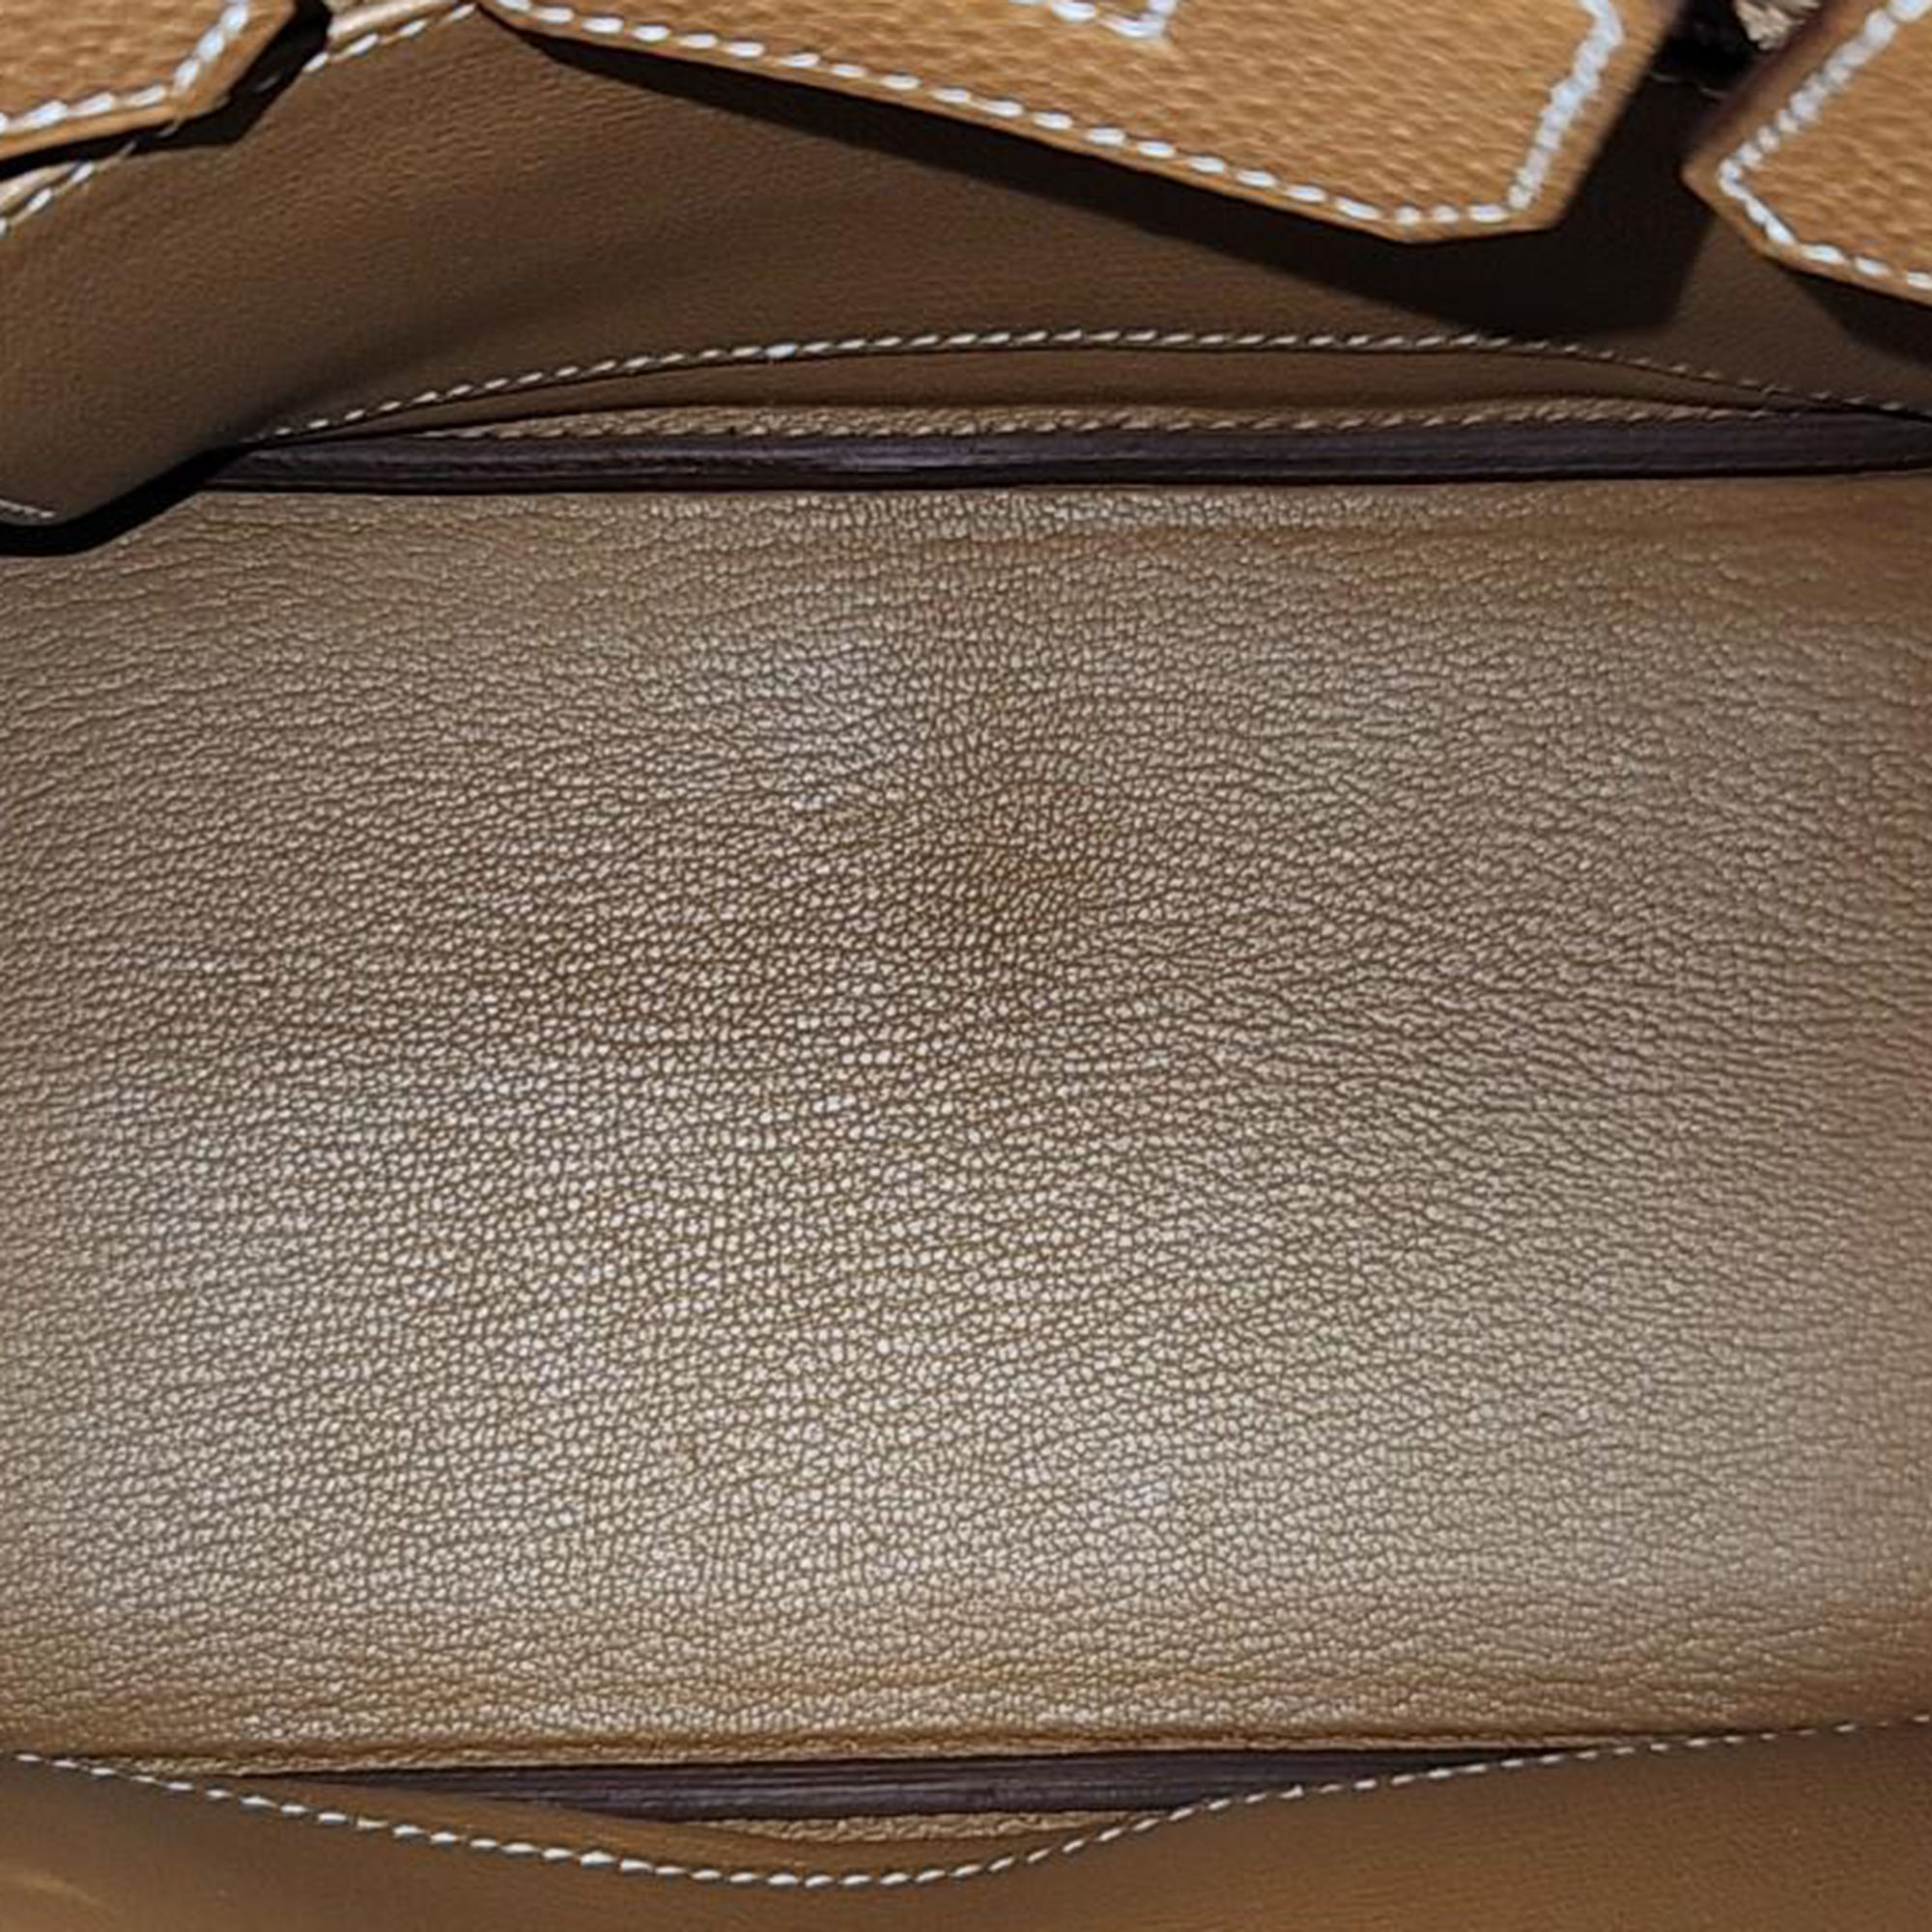 Hermes Birkin Leather Brown 25 (U) Bag